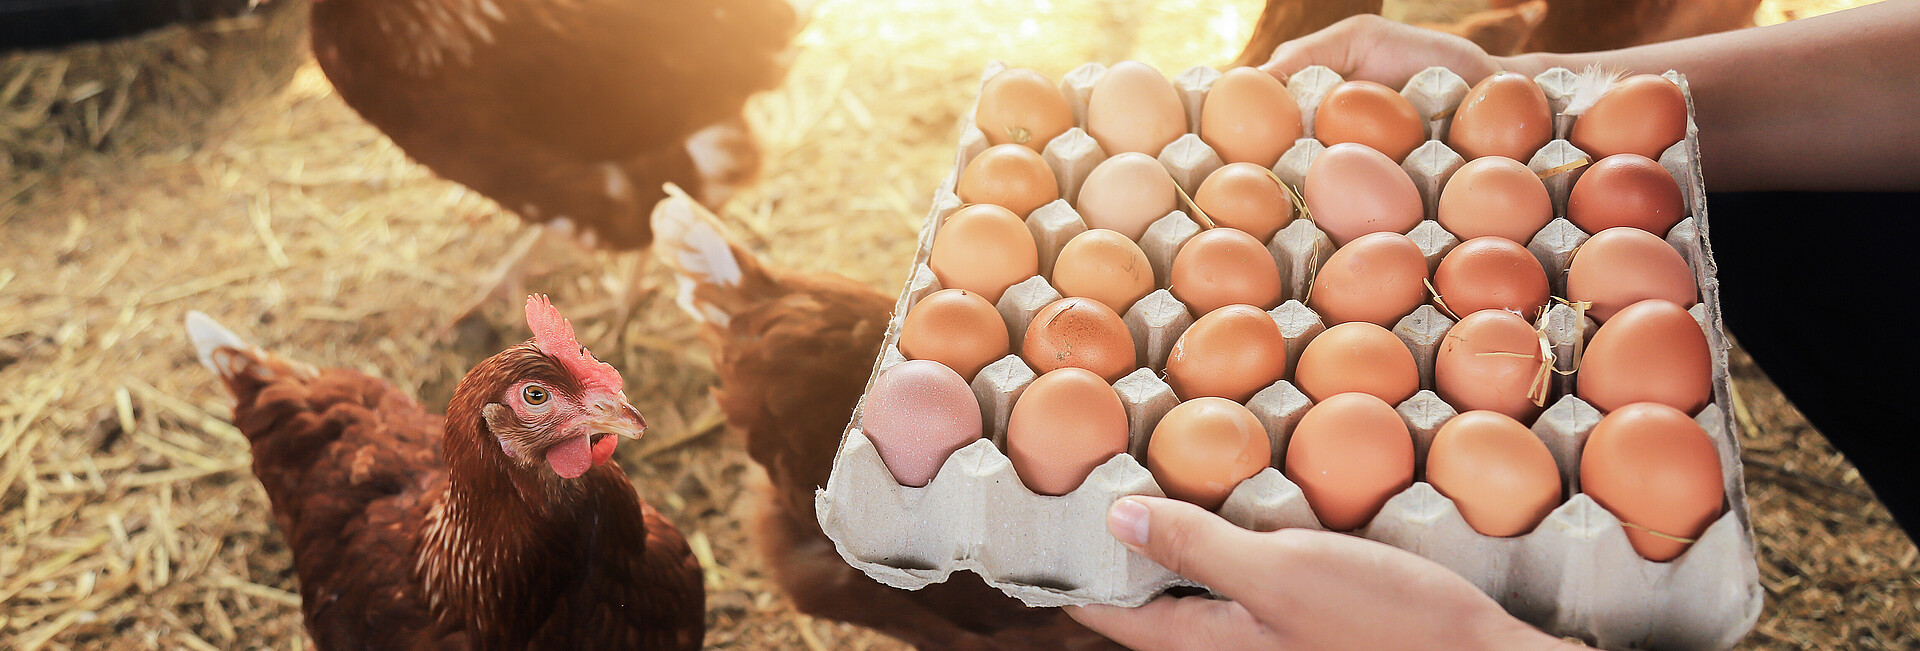 Eier direkt aus dem Hühnerstall